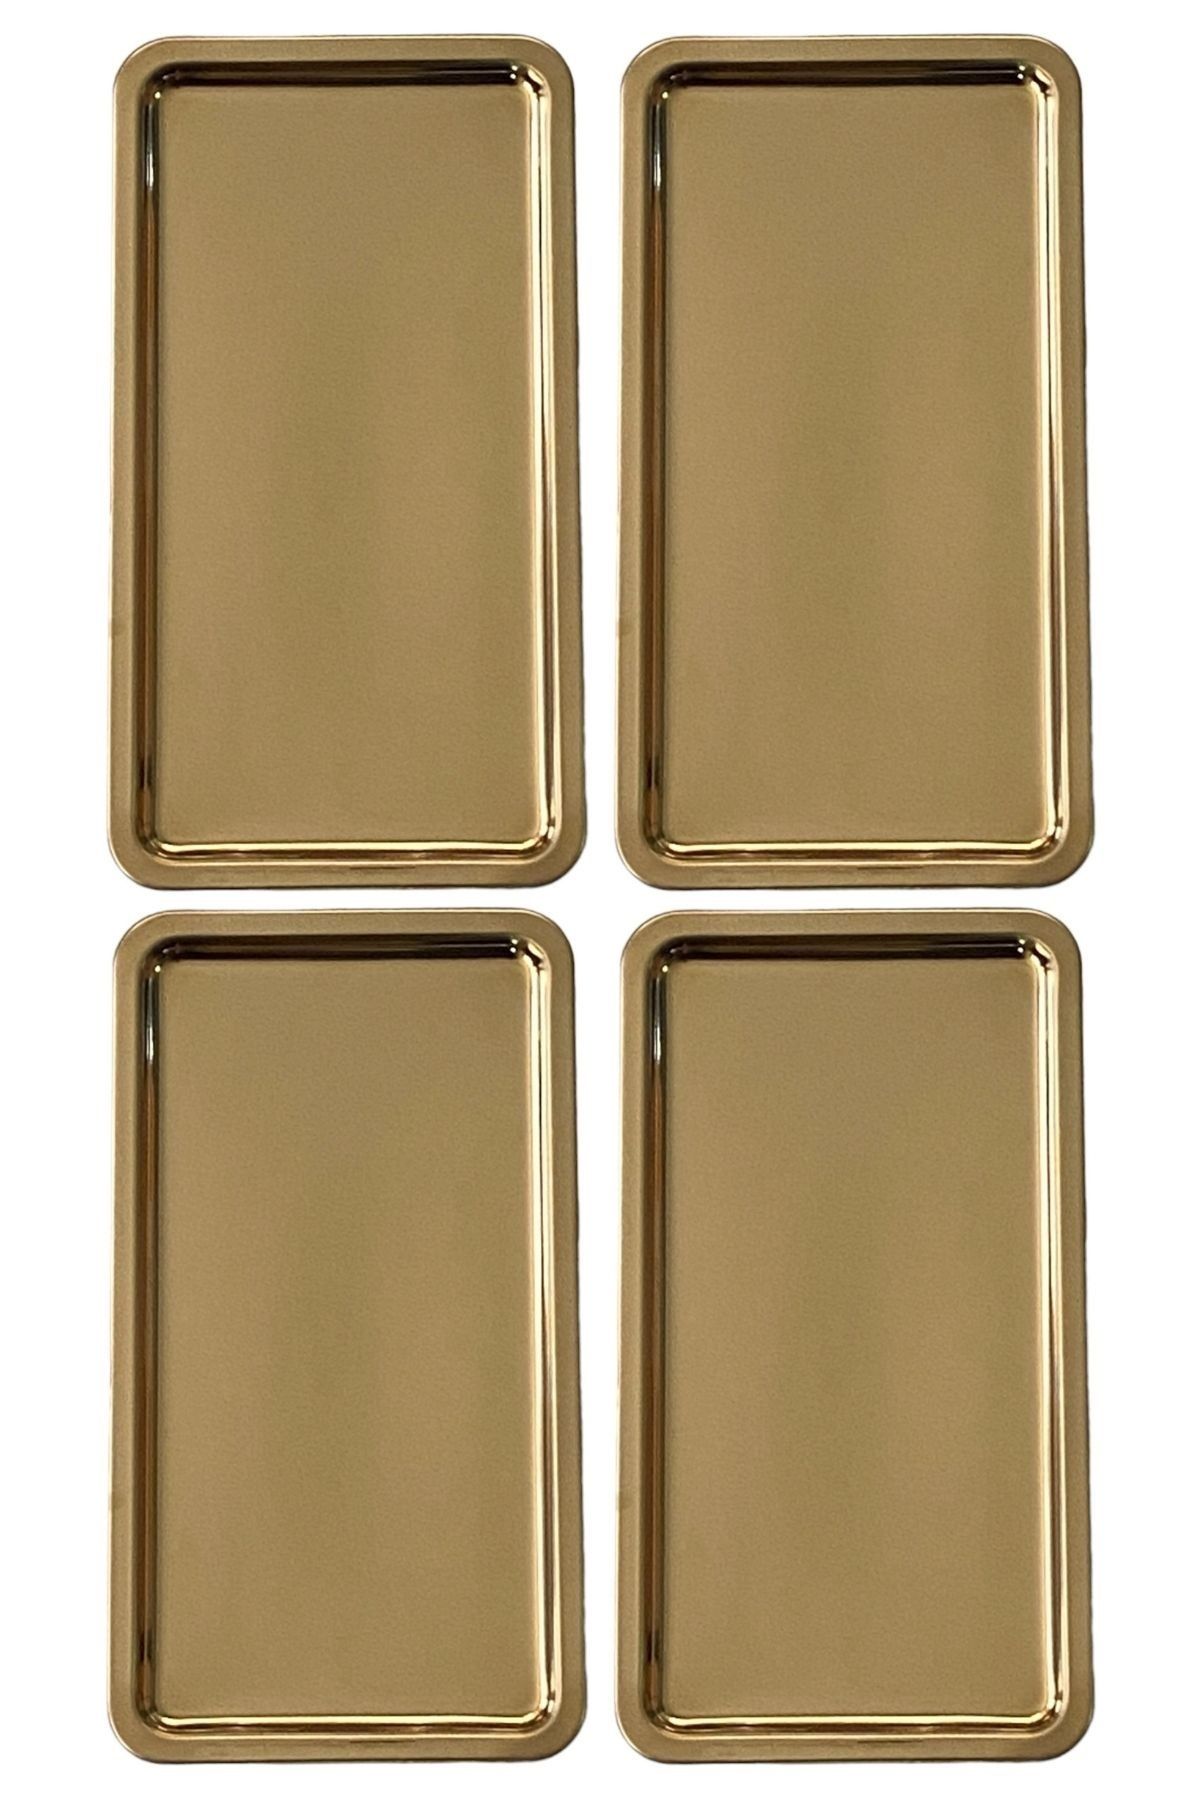 Kitchen Design Lab Paslanmaz Çelik Gold Renk Dikdörtgen Geniş Metal Düz Sunum Tepsisi Çay Kahve Tatlı Sunum 4 Adet